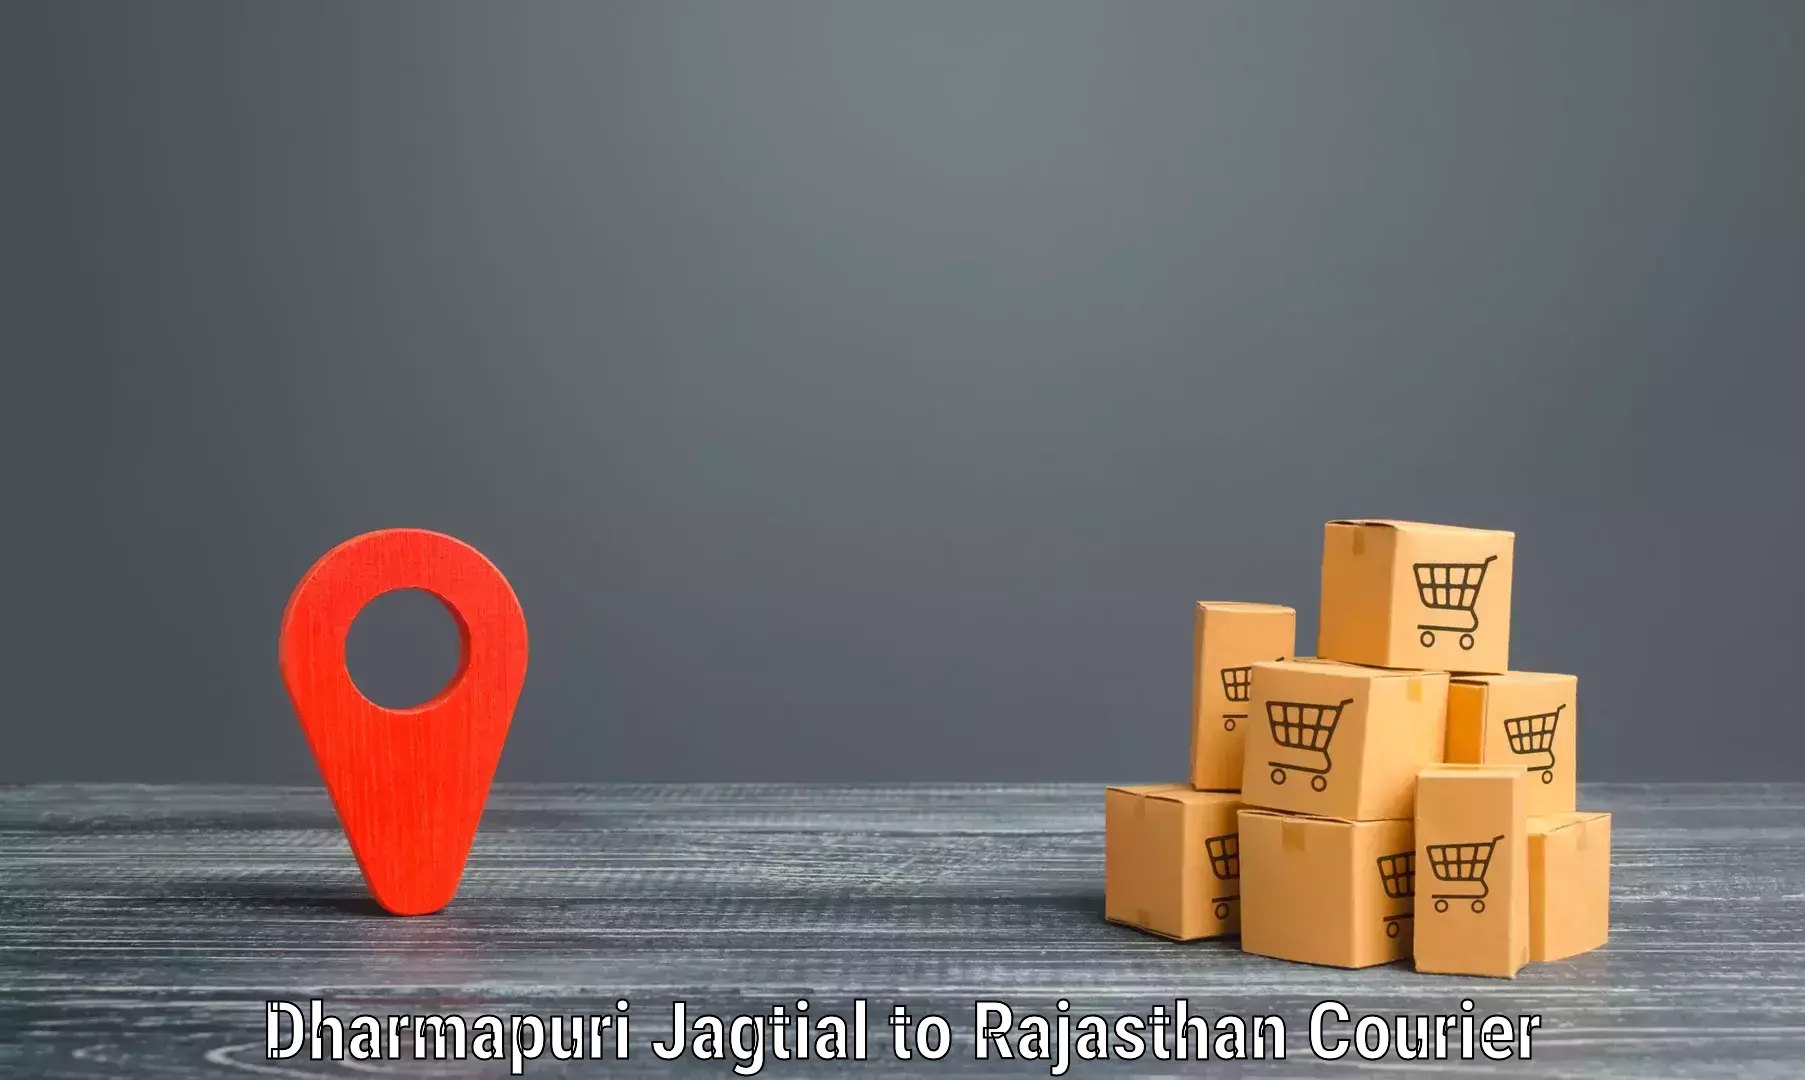 Express delivery capabilities Dharmapuri Jagtial to Achrol